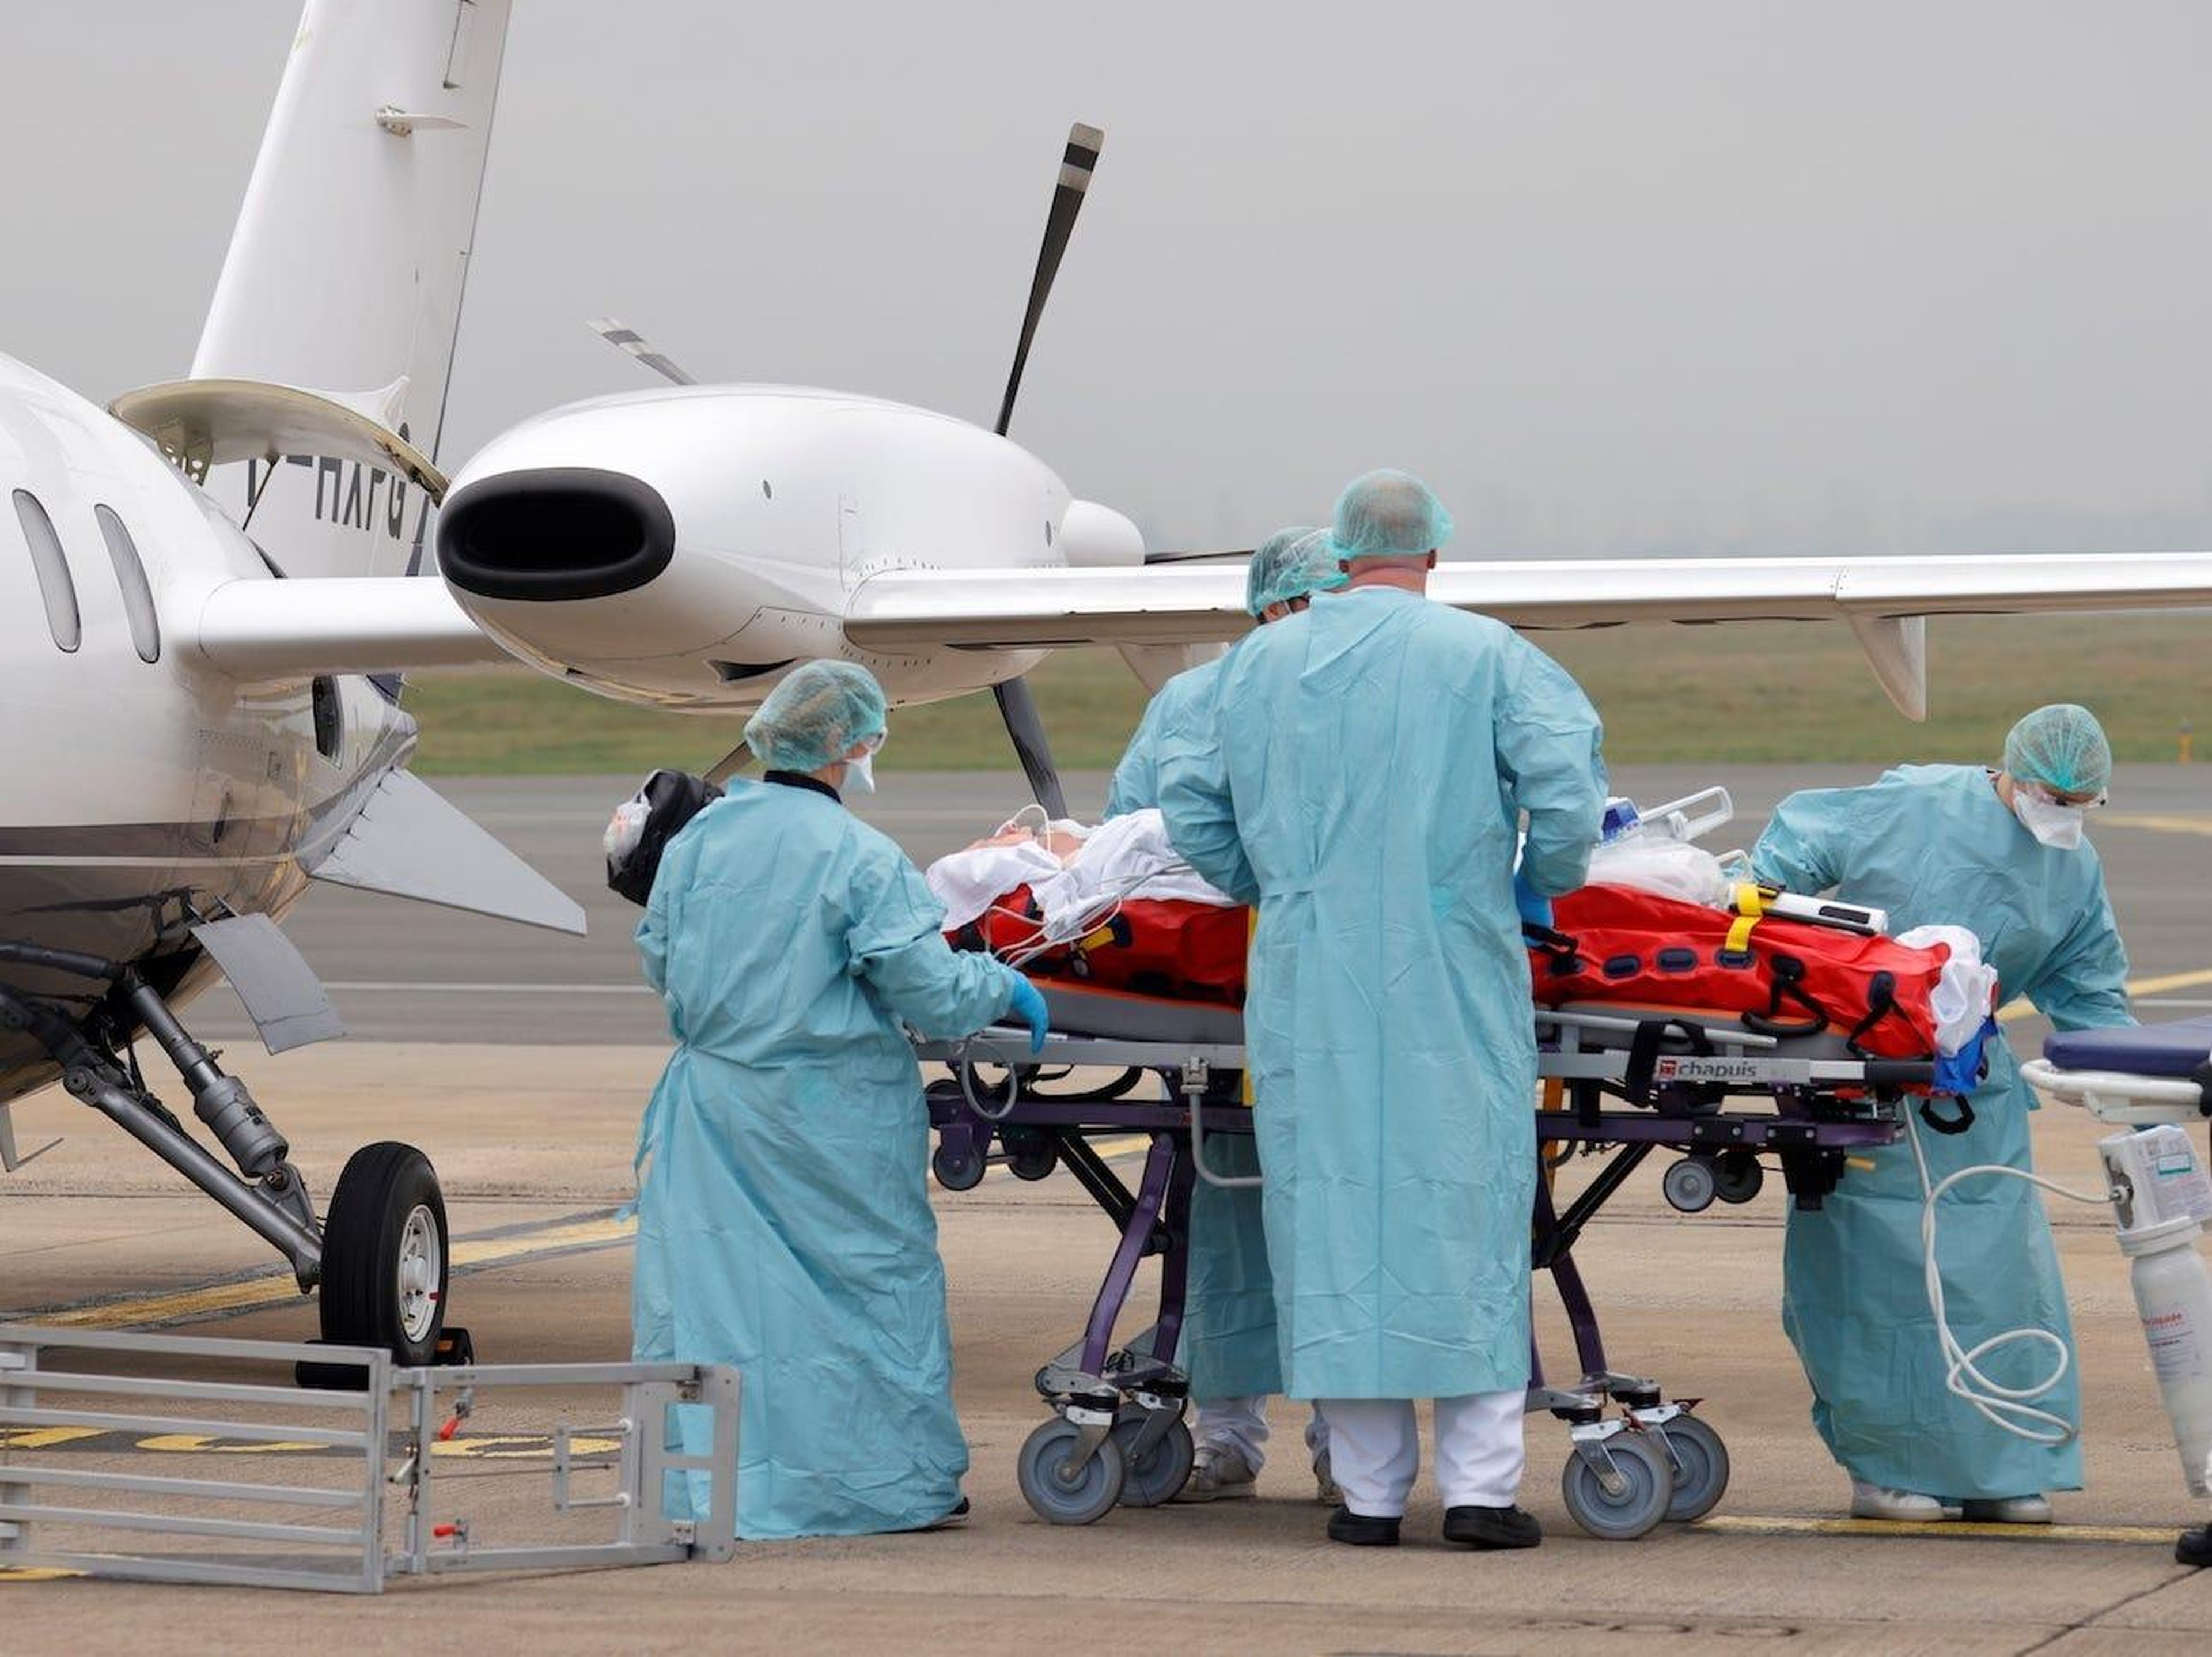 Miembros del personal médico trasladan a un paciente que padece el coronavirus a un avión durante una operación de traslado desde el aeropuerto de Lille-Lesquin, en Francia, al aeropuerto de Munster, en Alemania, el 10 de noviembre de 2020.